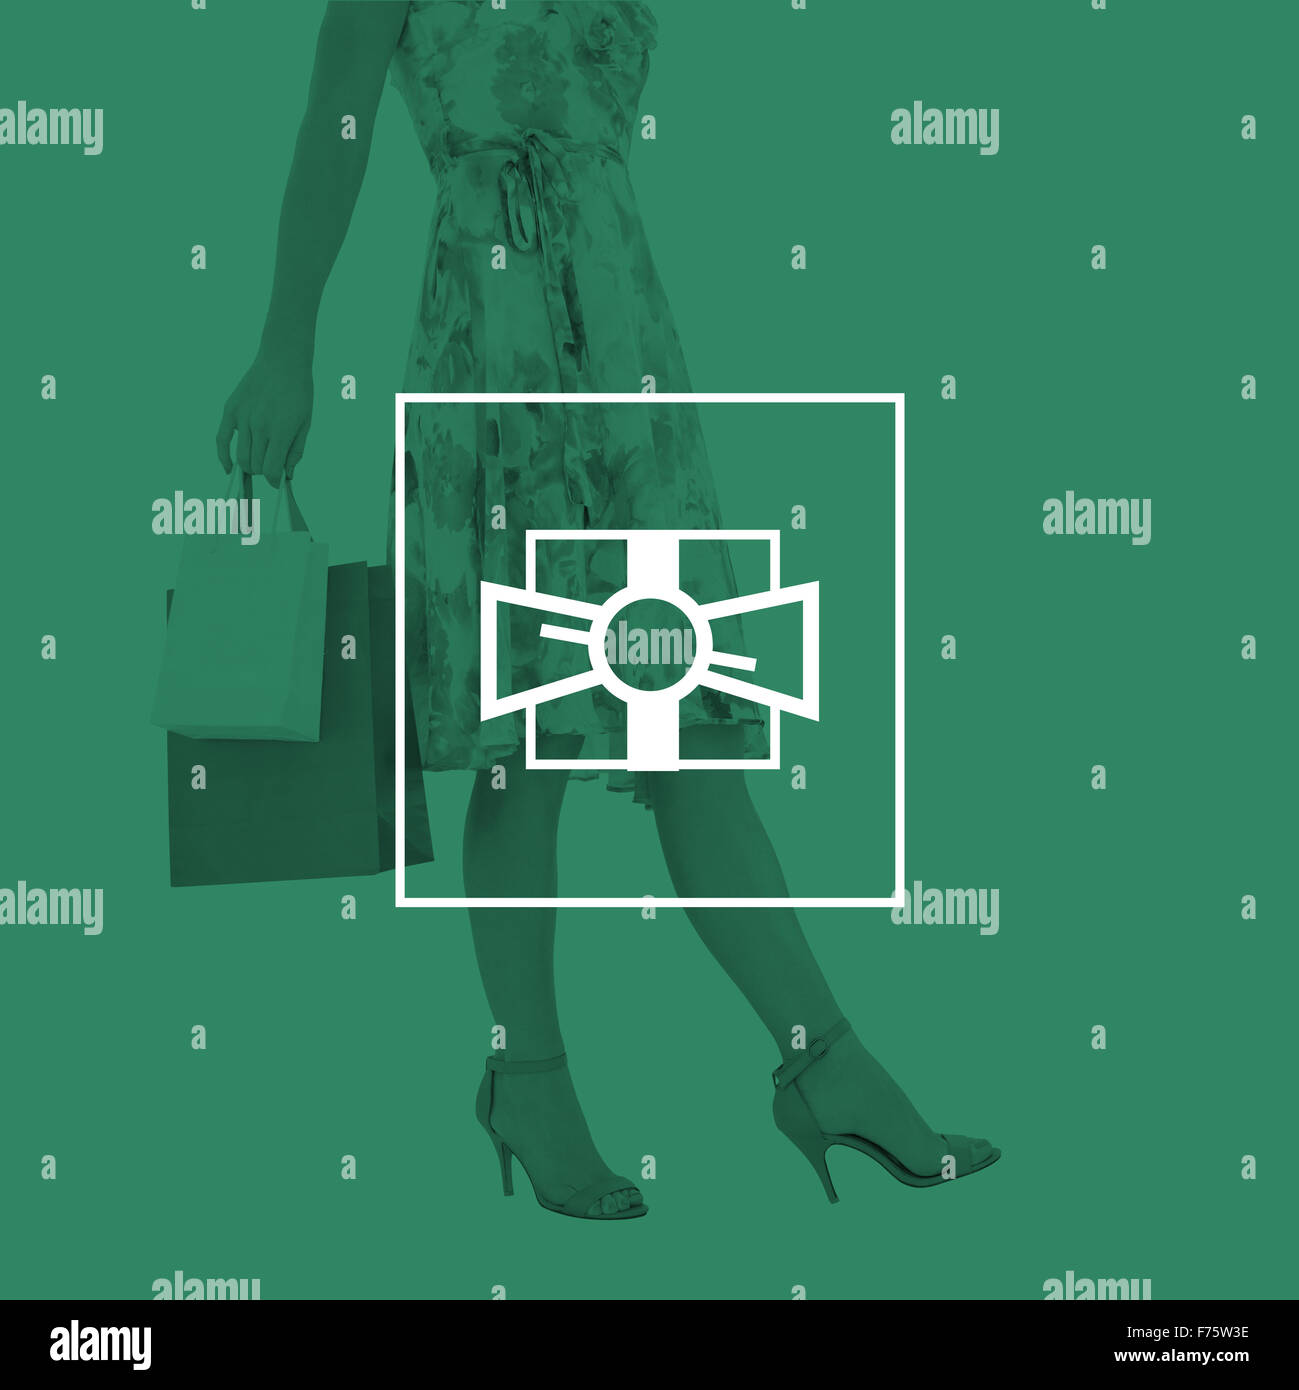 Immagine composita della donna elegante con borse per lo shopping Foto Stock